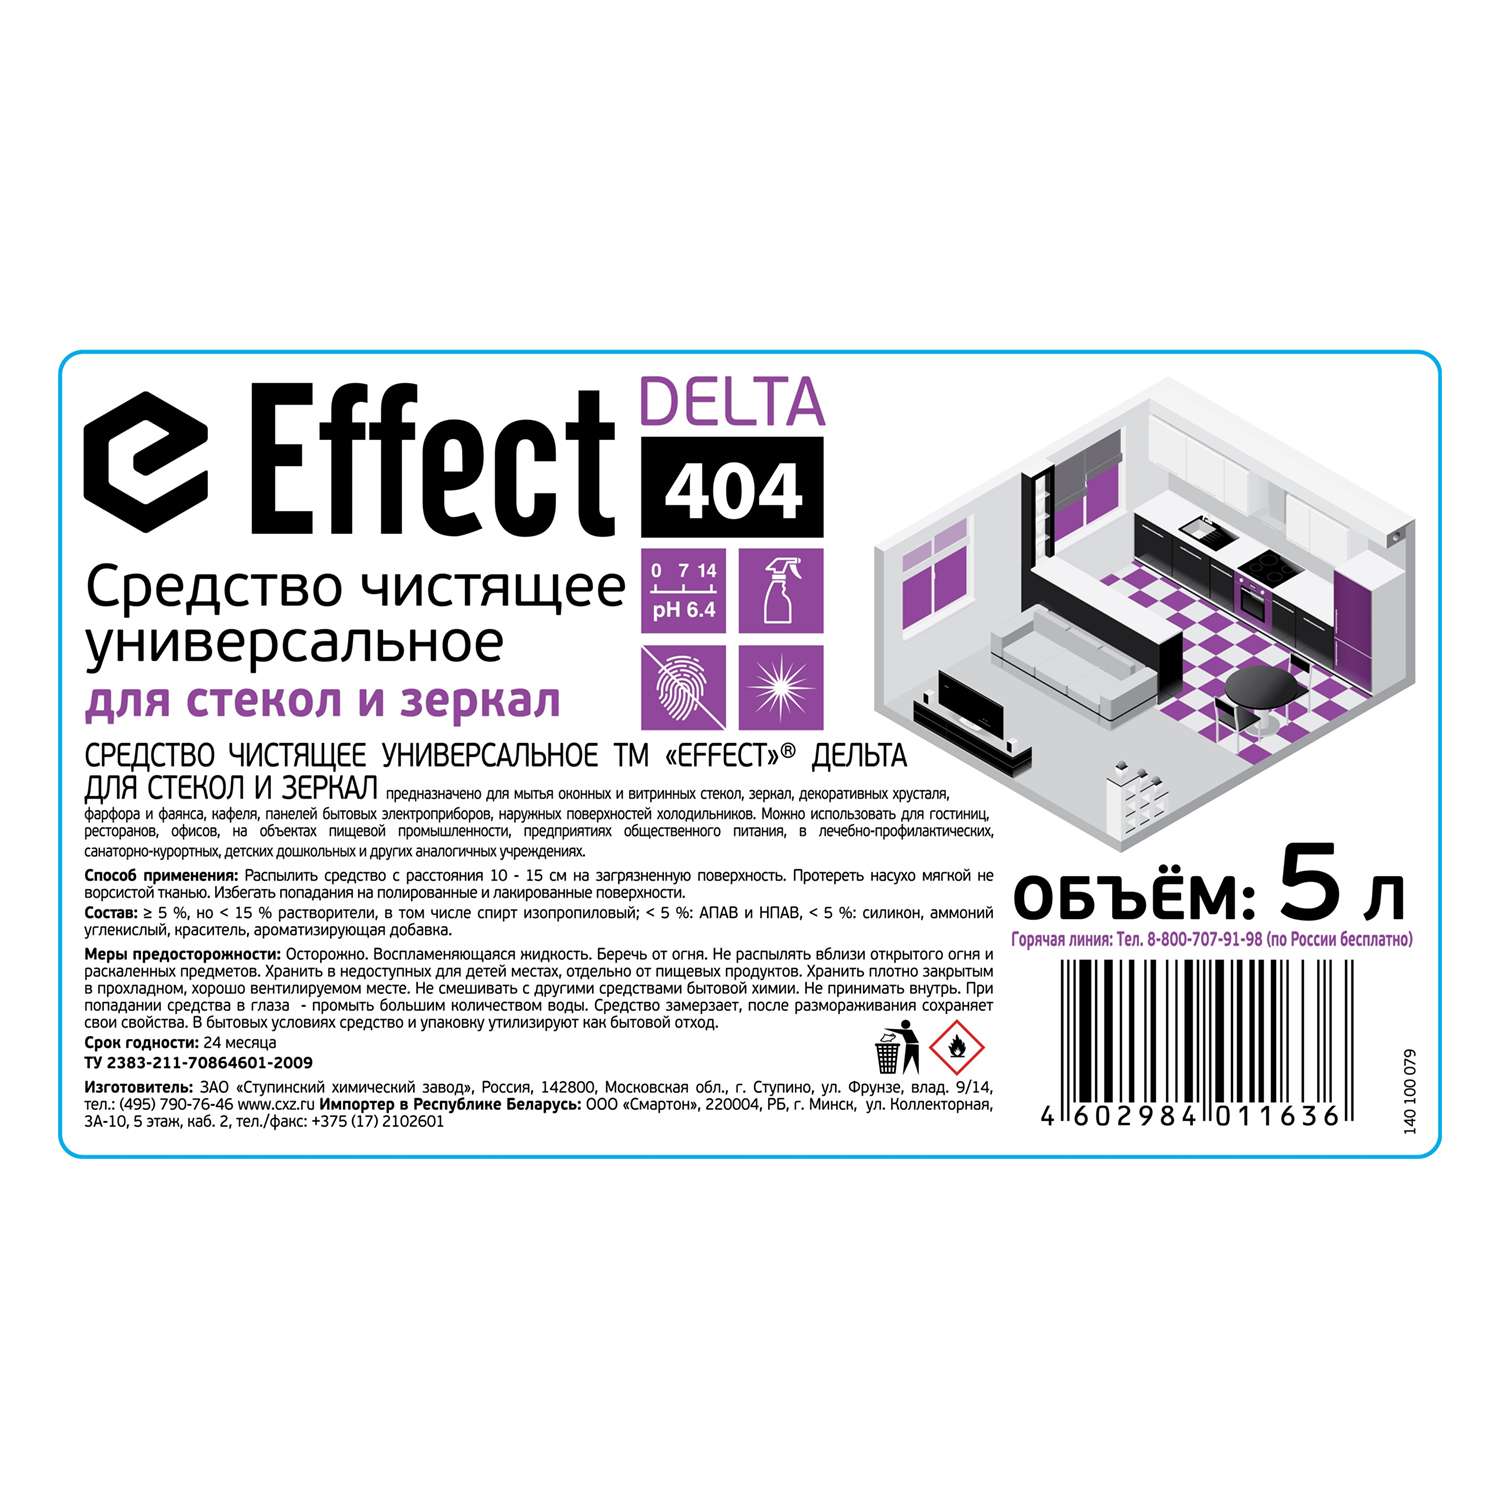 Чистящее средство Effect Delta 404 для стекол и зеркал 5 л - фото 2